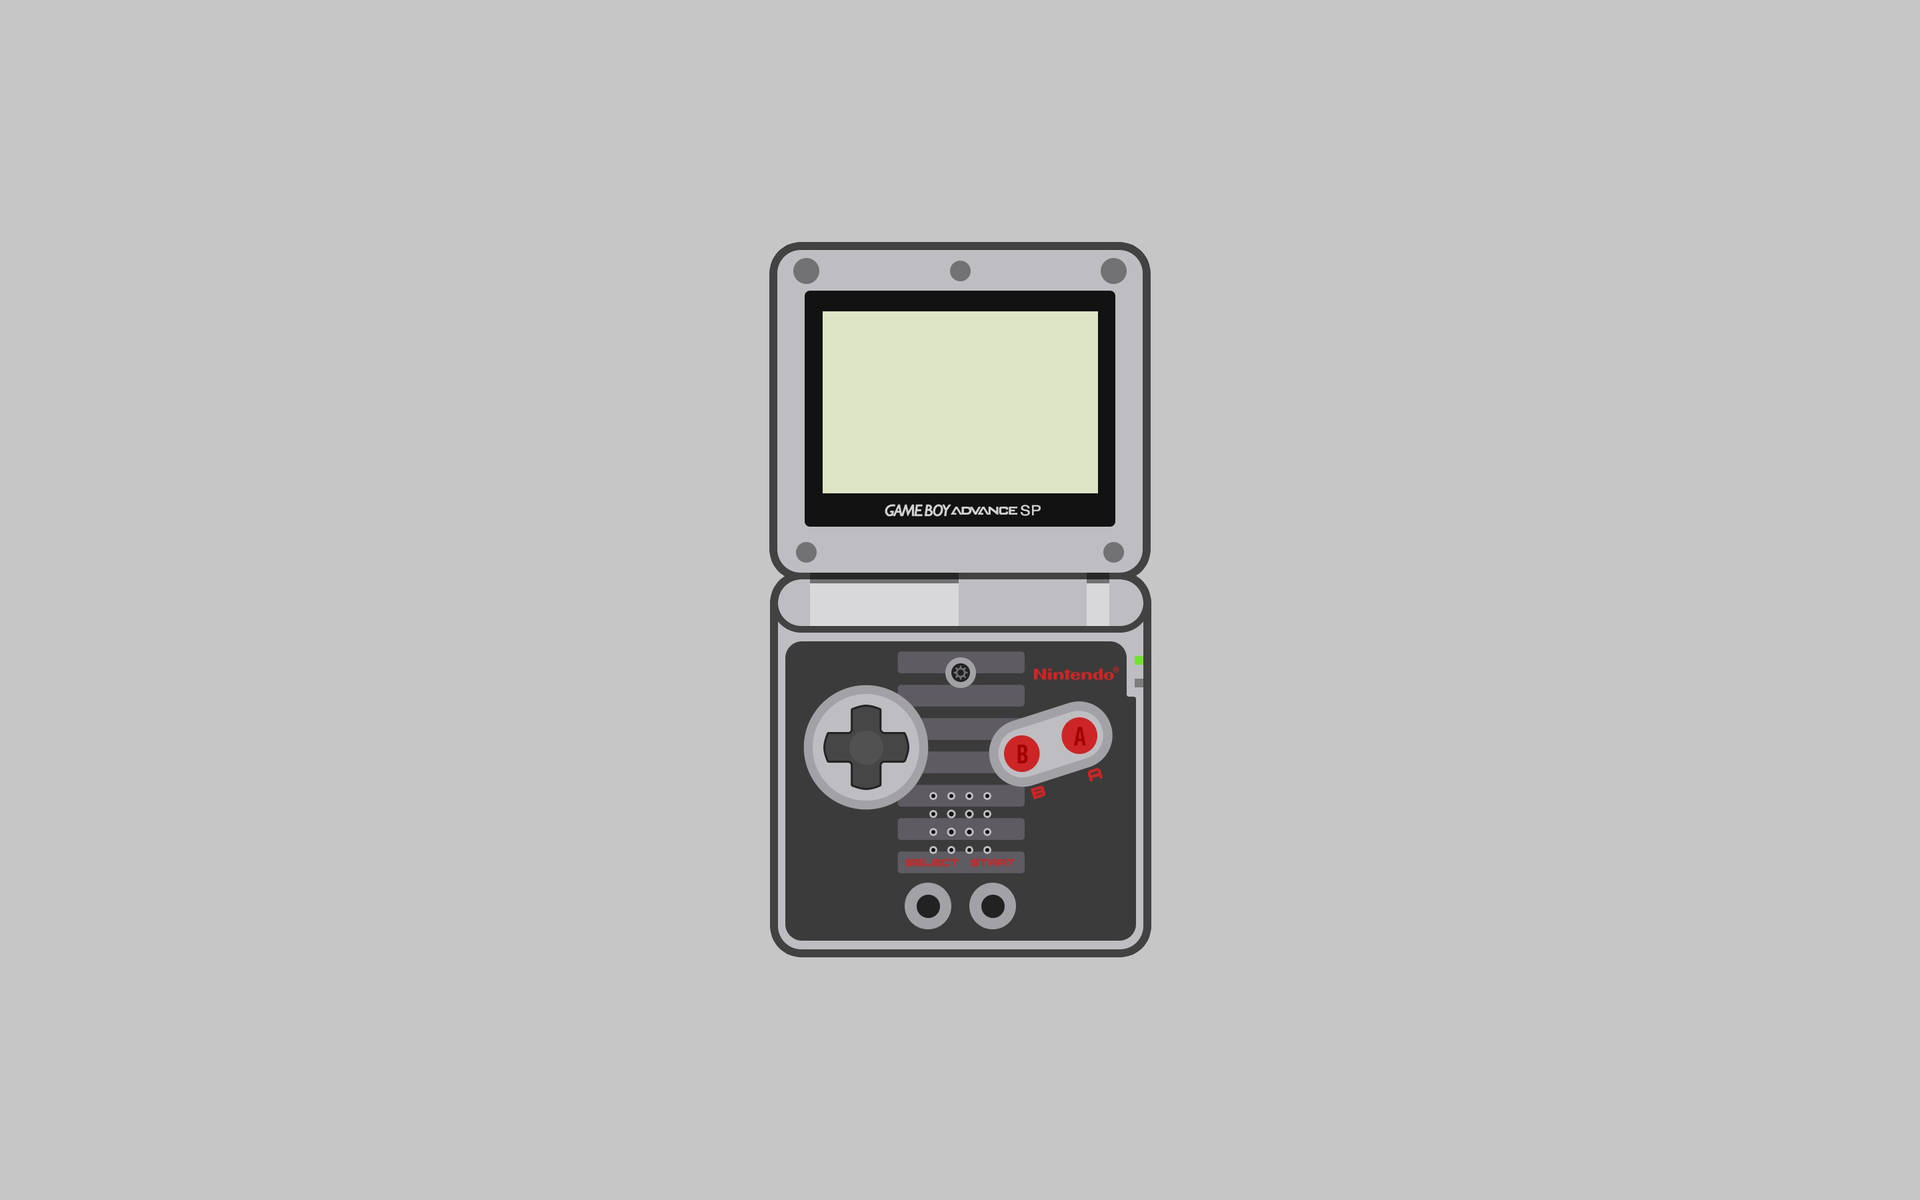 Digital Art Game Boy Advance SP Wallpaper